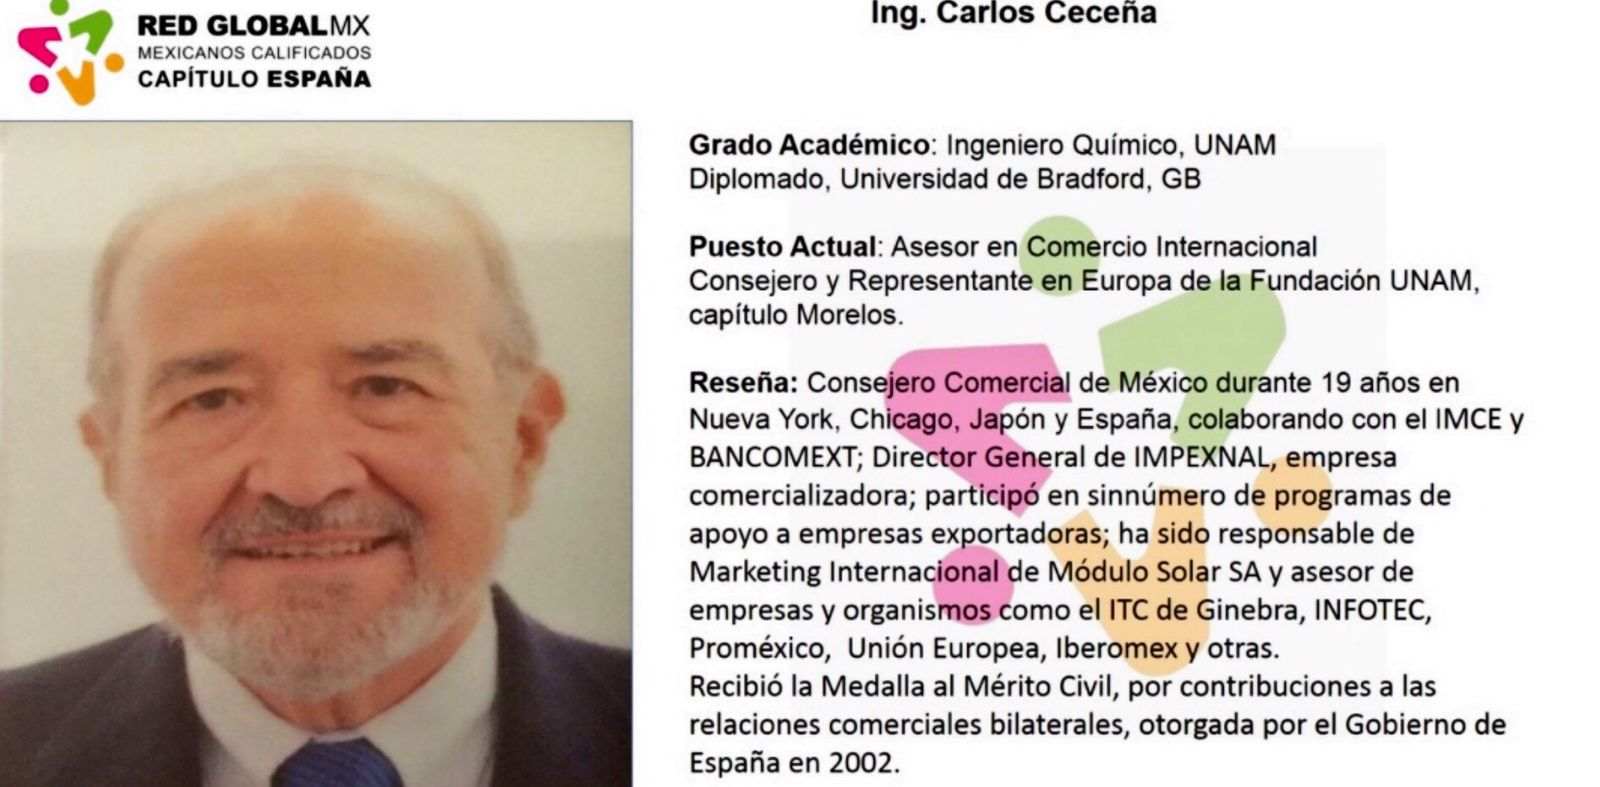 Carlos Ceceña